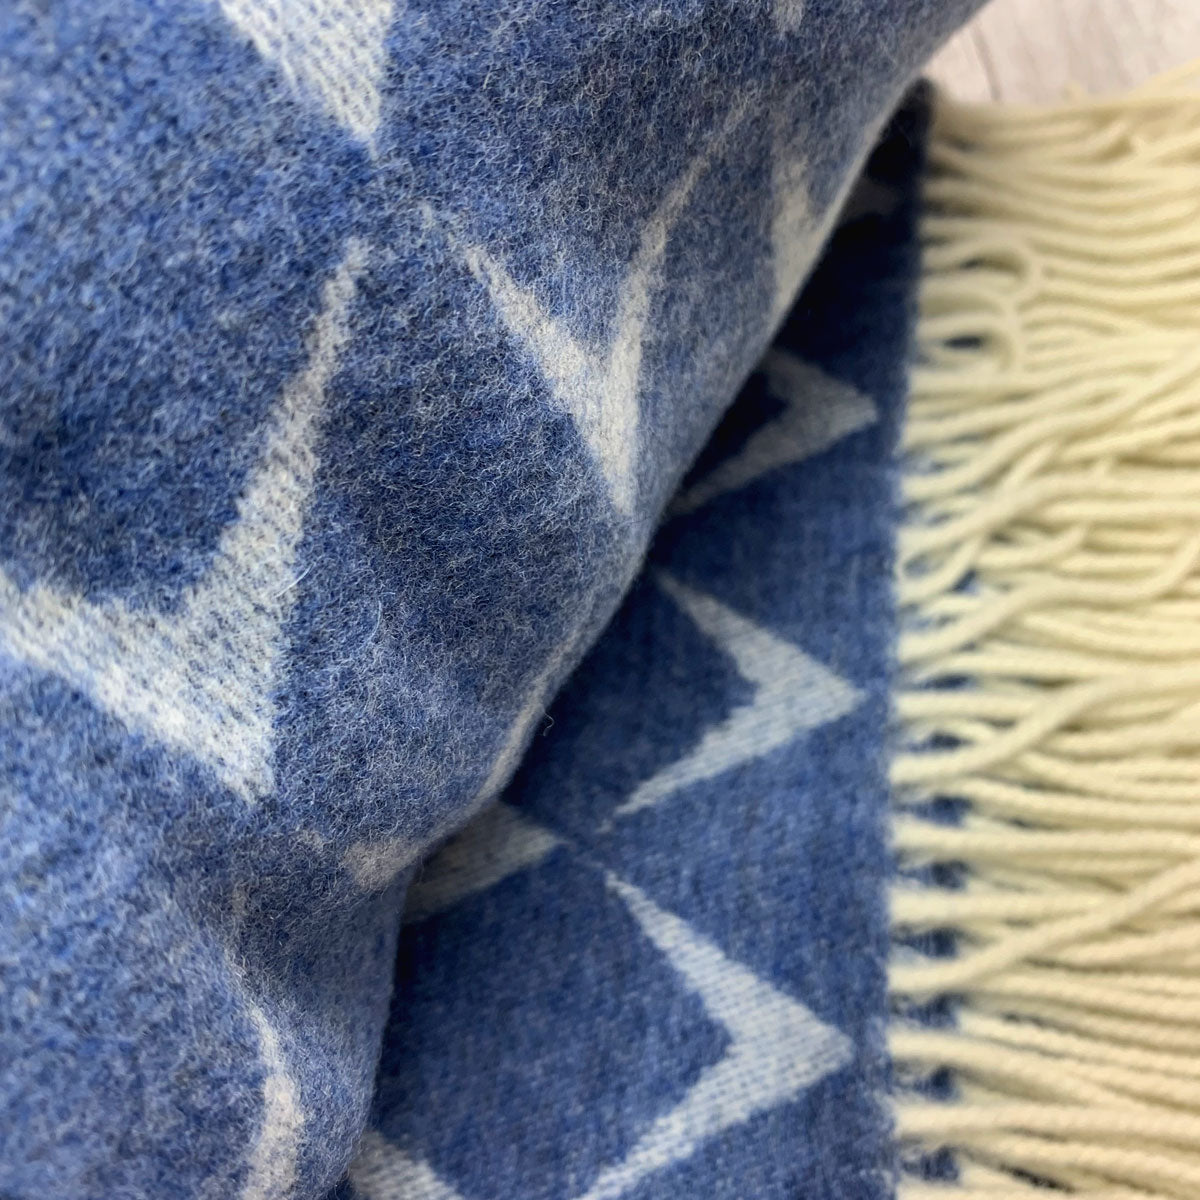 Penrhos Blue Merino Welsh Blanket by Tweedmill